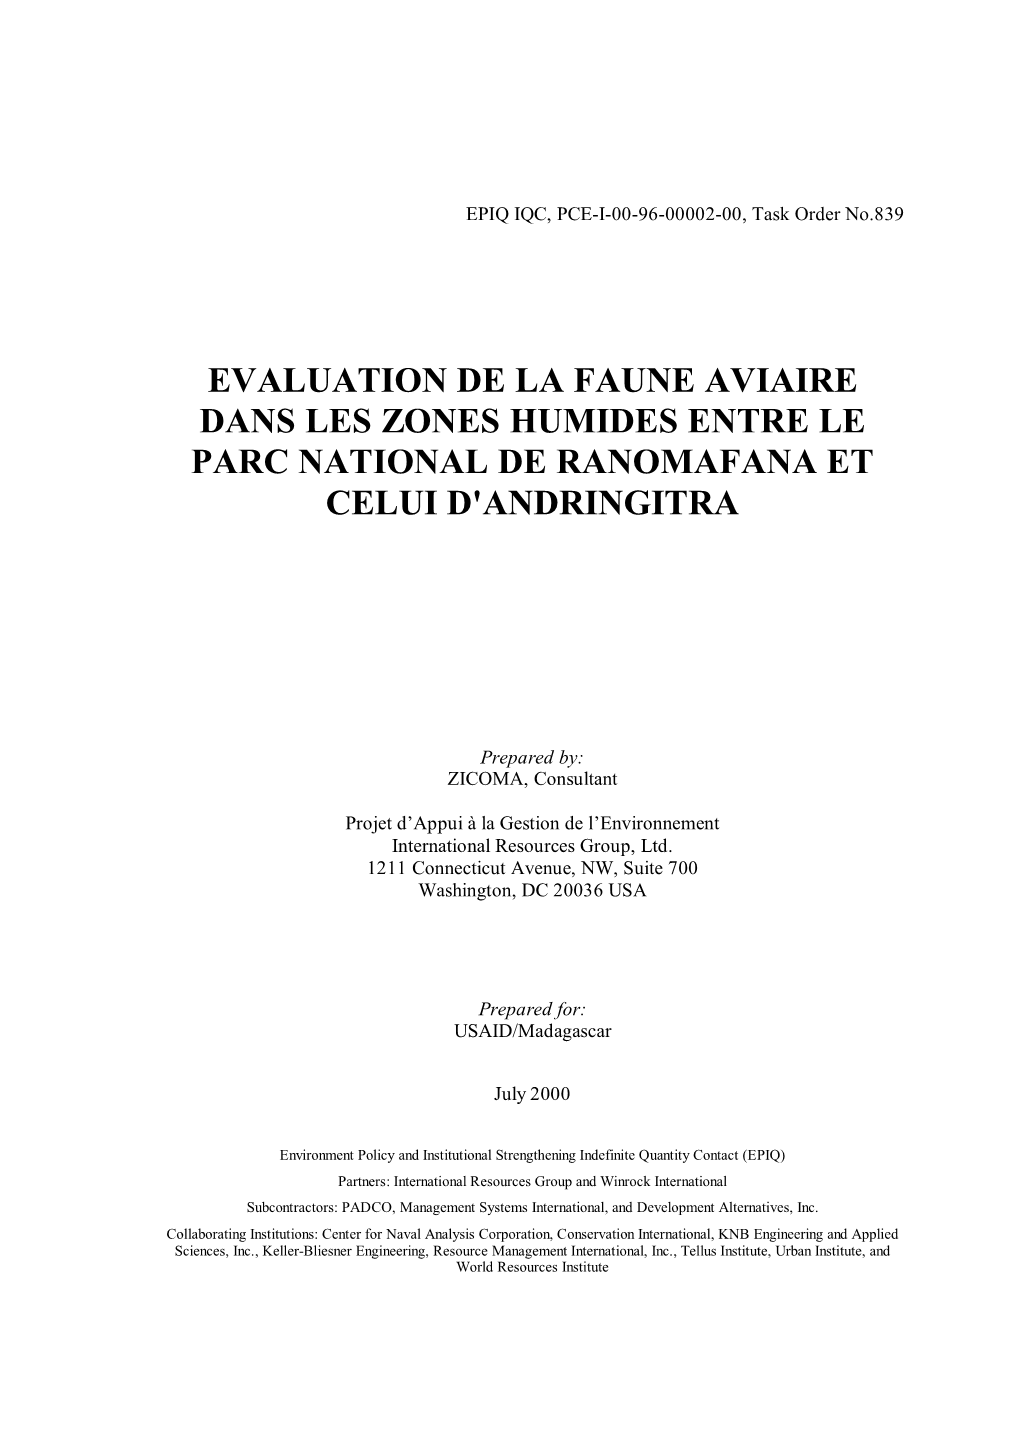 Evaluation De La Faune Aviaire Dans Les Zones Humides Entre Le Parc National De Ranomafana Et Celui D'andringitra